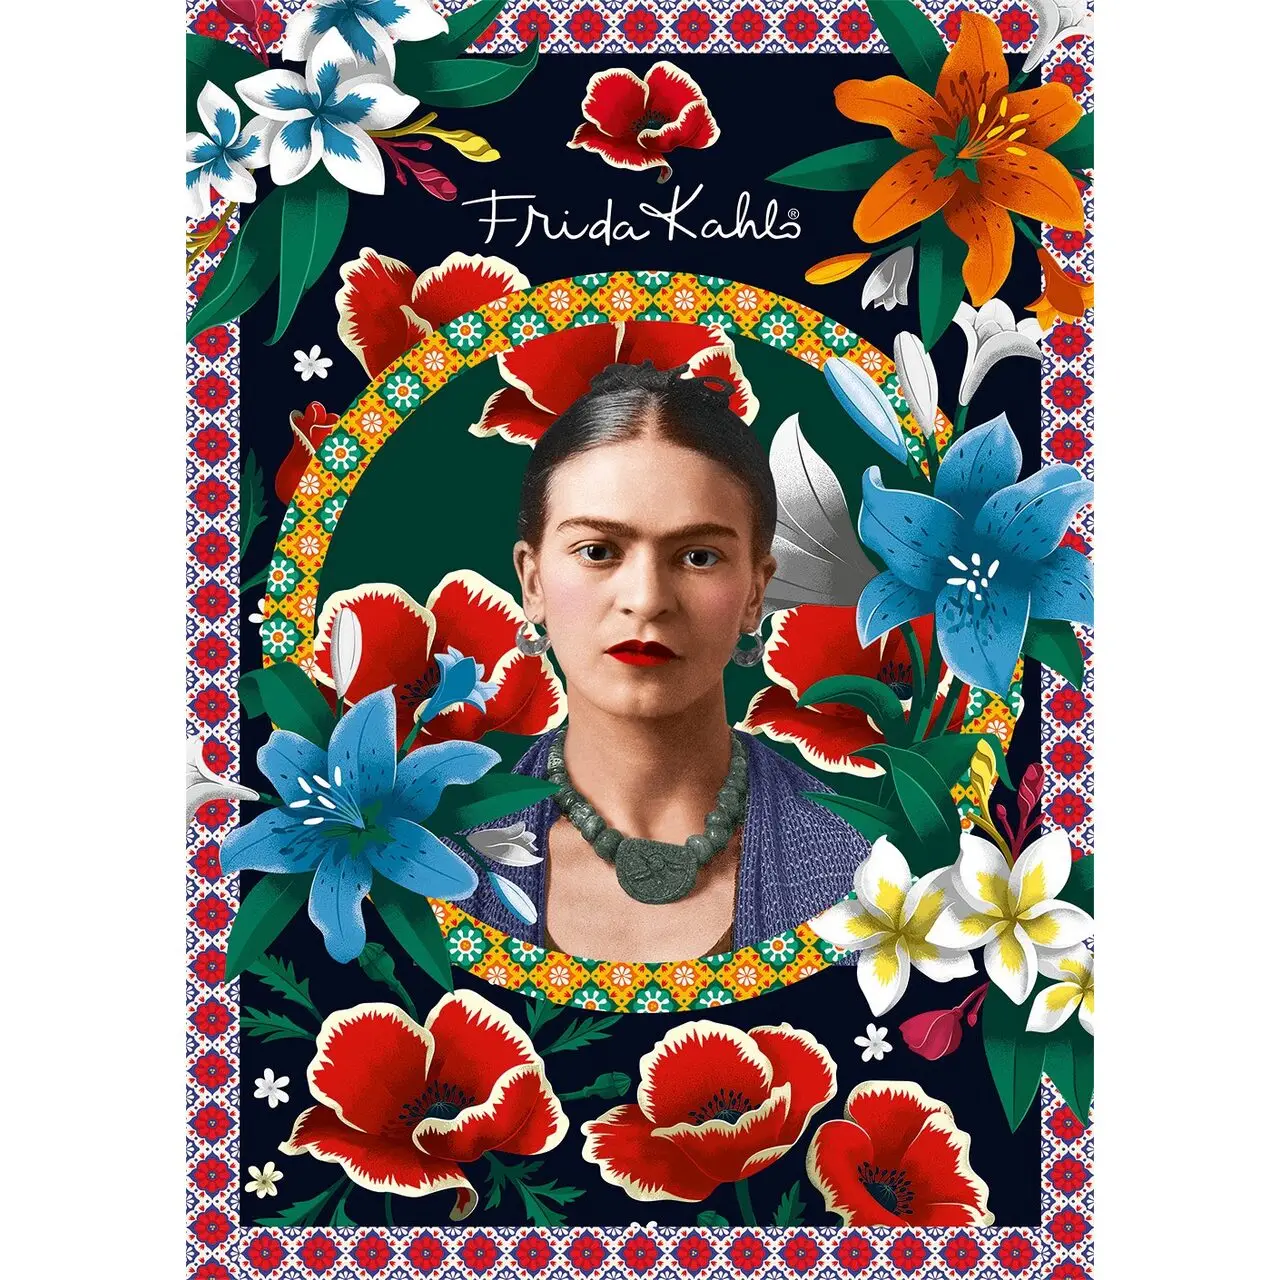 Puzzle Kahlo Frida